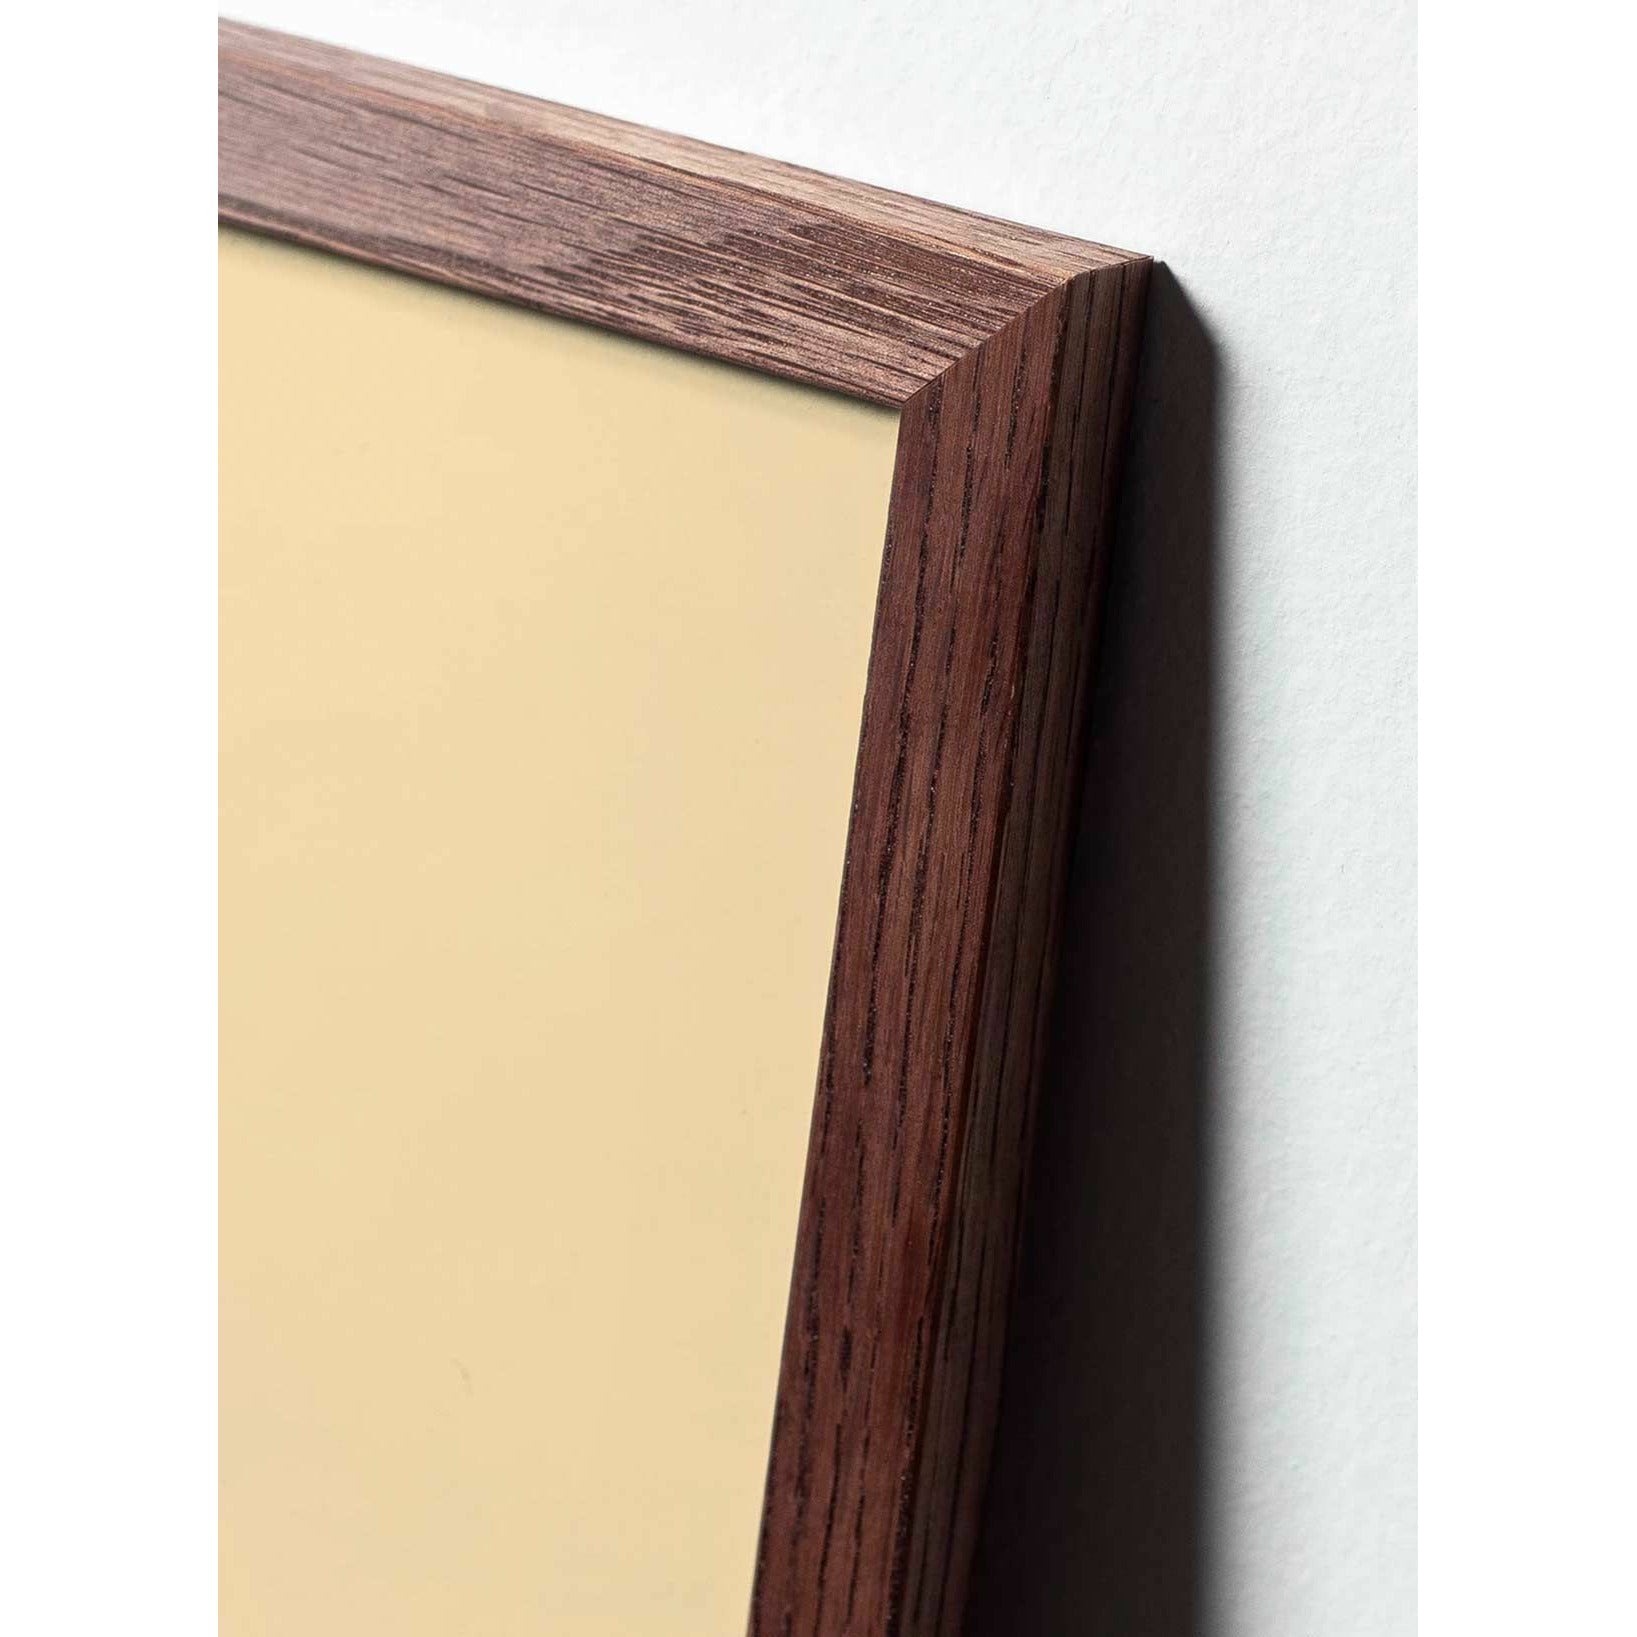 brainchild Affiche classique du cône en pin, cadre en bois foncé 50x70 cm, fond de couleur sable